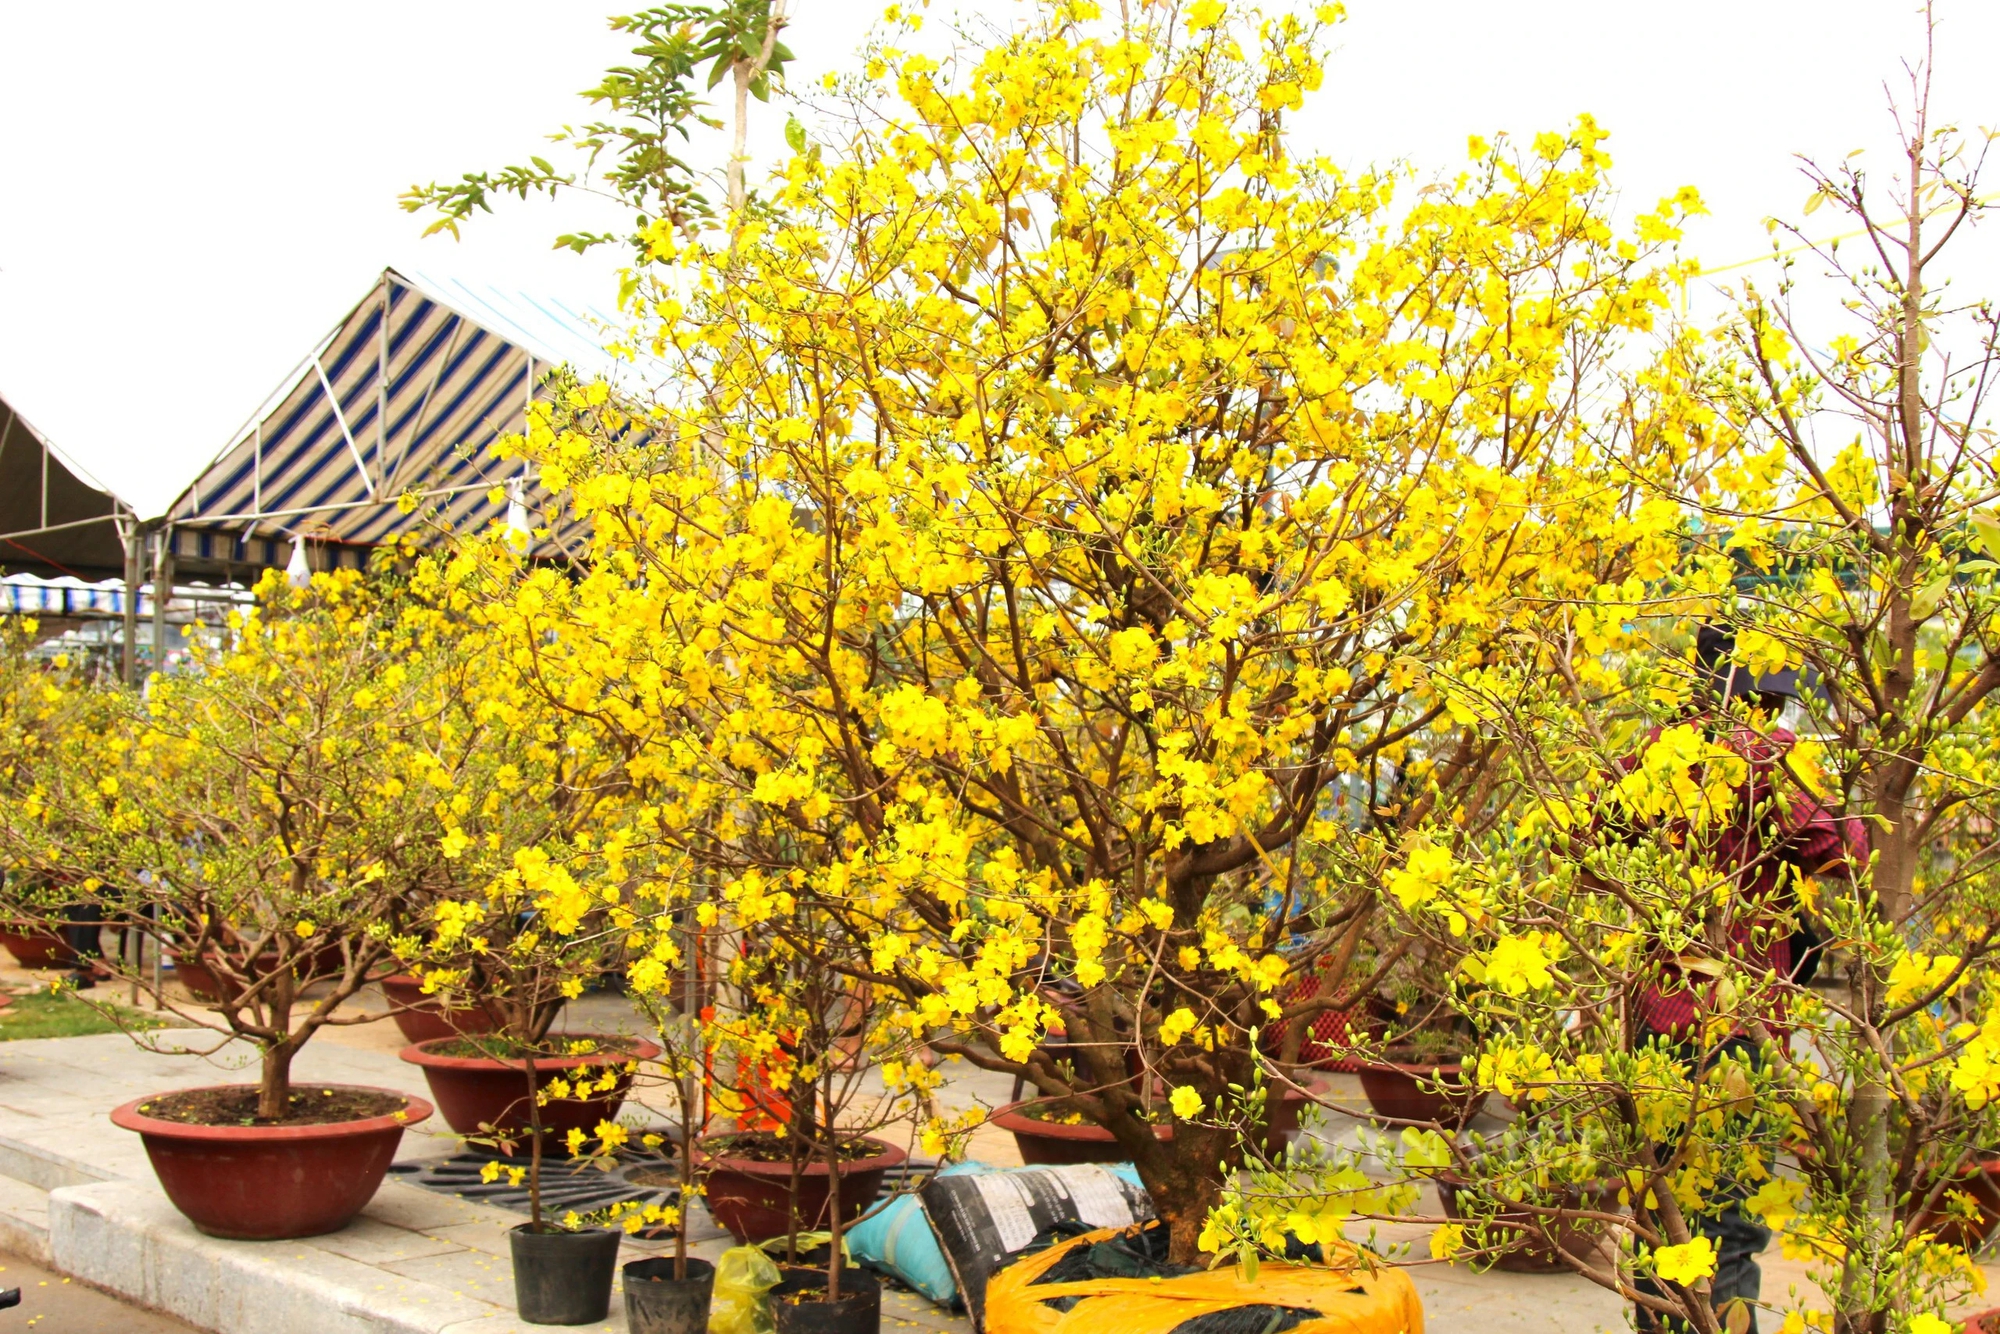 Hoa mai vàng bung nở rực rỡ tại chợ hoa Cần Thơ- Ảnh 2.